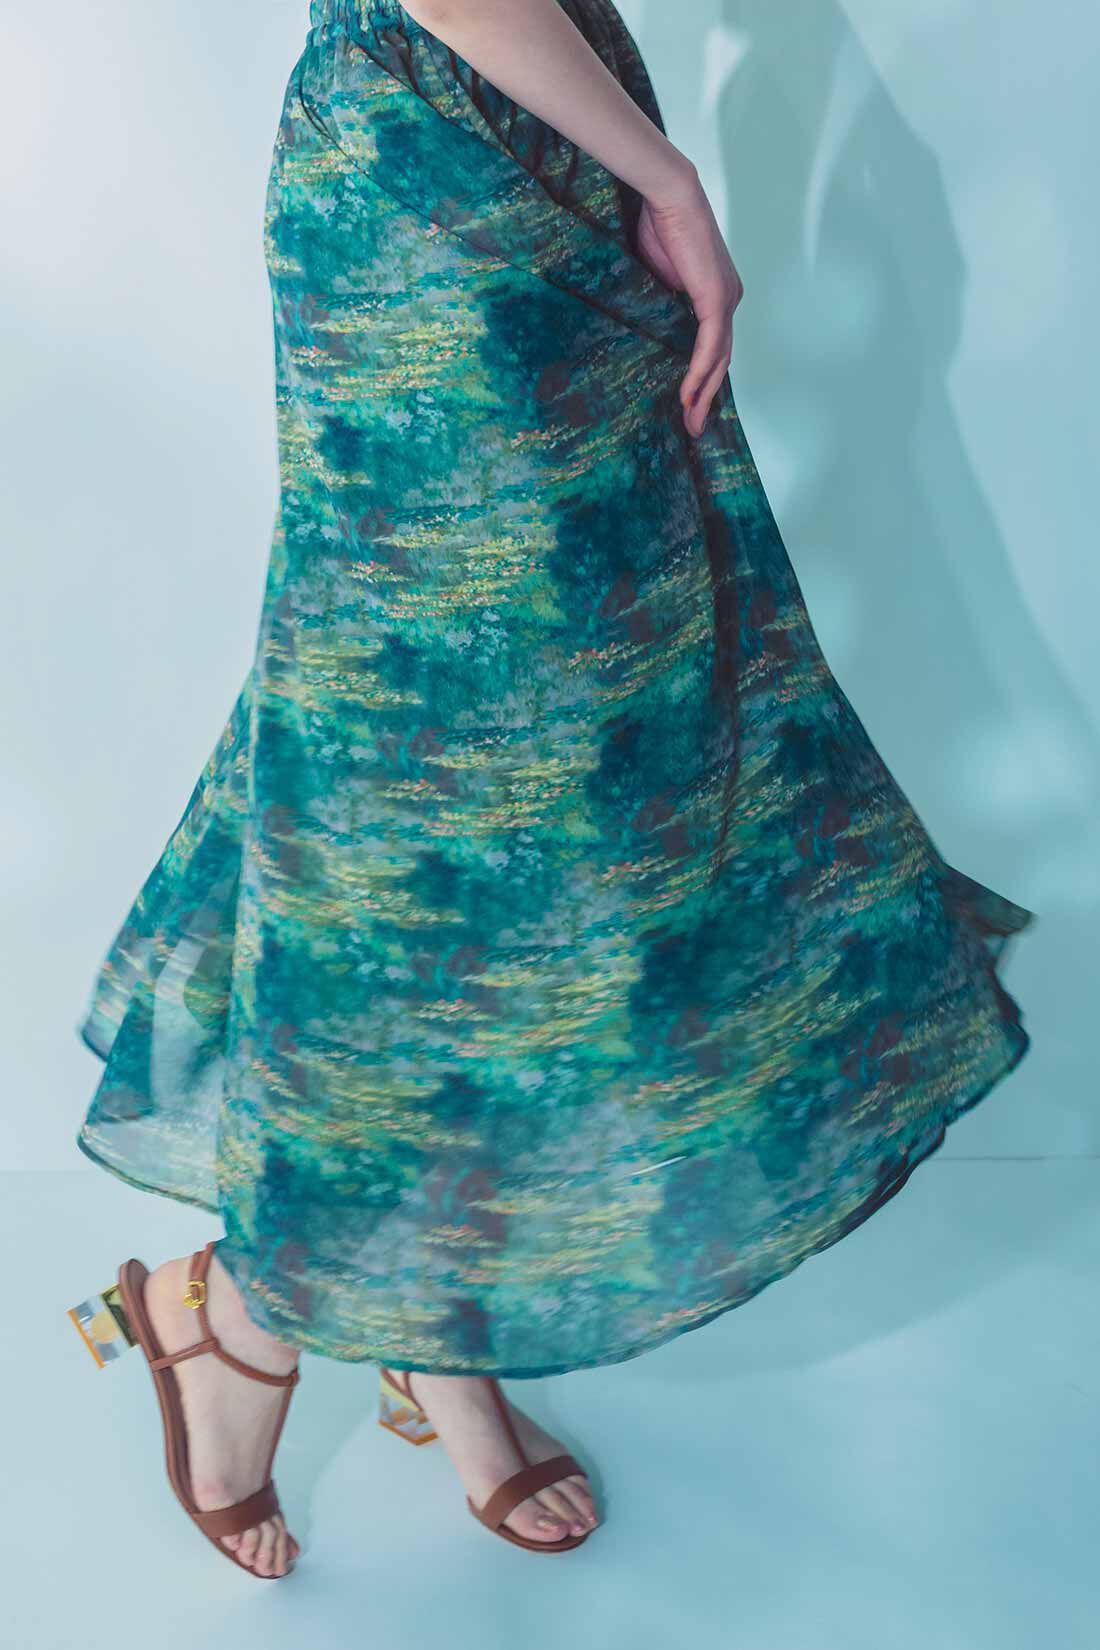 イディット|IEDIT[イディット]　モネの睡蓮をまとうシフォンスカート〈ブルー〉|※着用イメージです。お届けするカラーとは異なります。